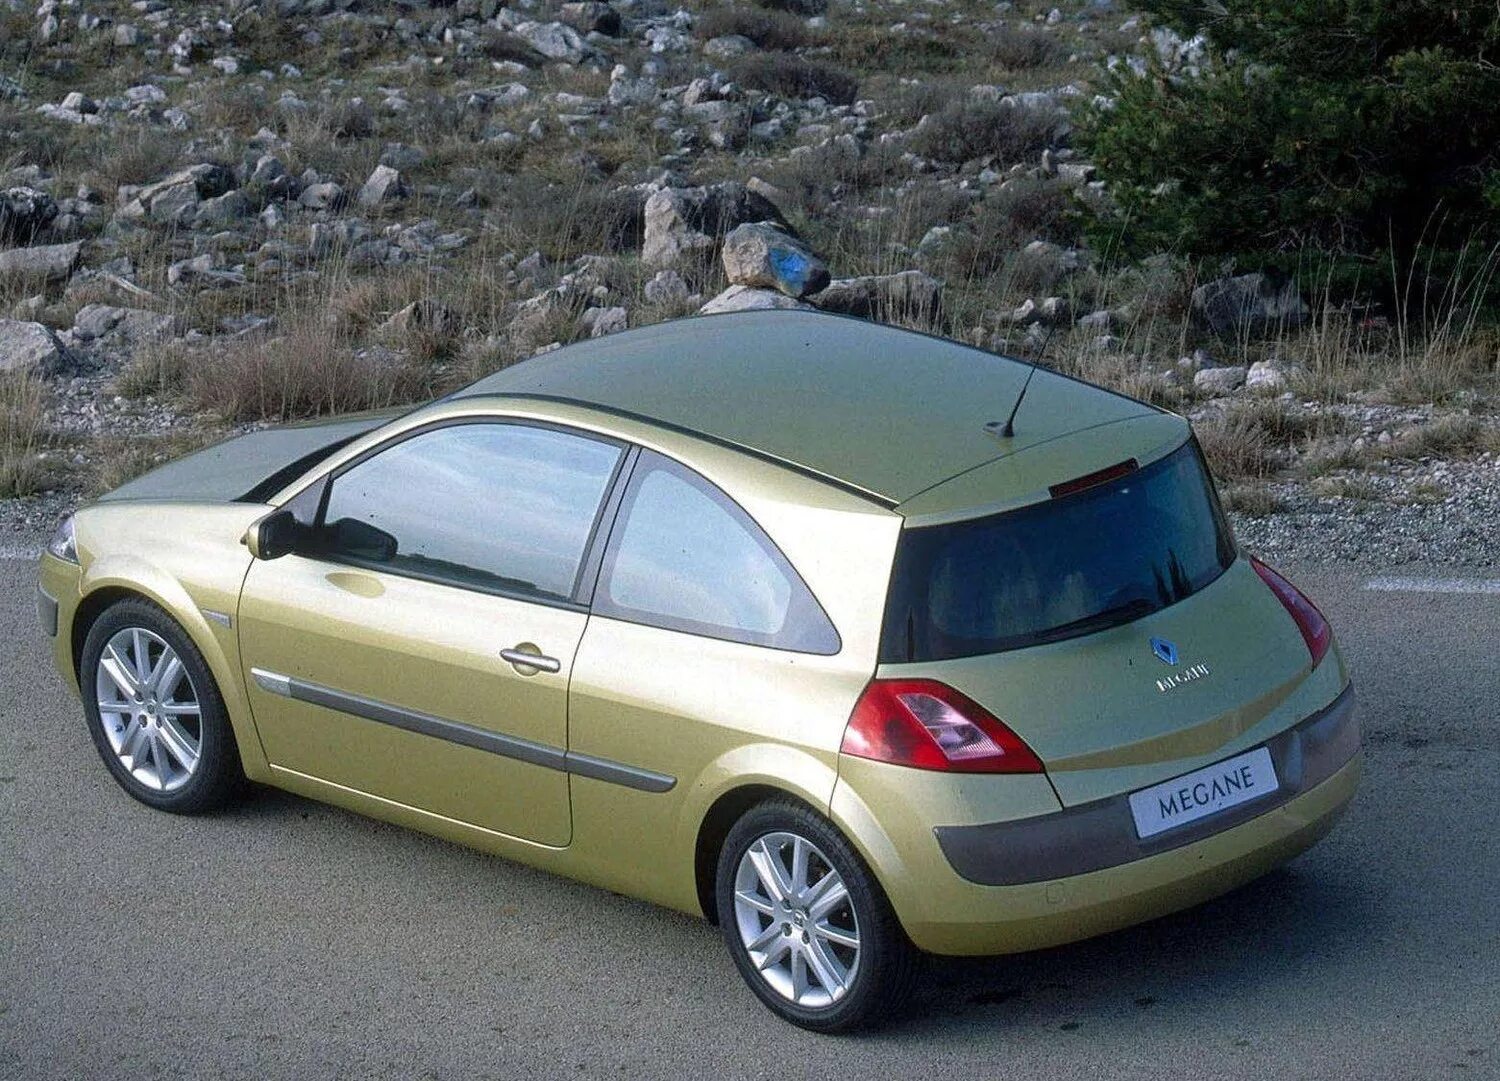 Megane 1.5 dci. Рено Меган 2. Renault Megane 2 купе. Renault Megane II 2002. Renault Megane Coupe 2002.